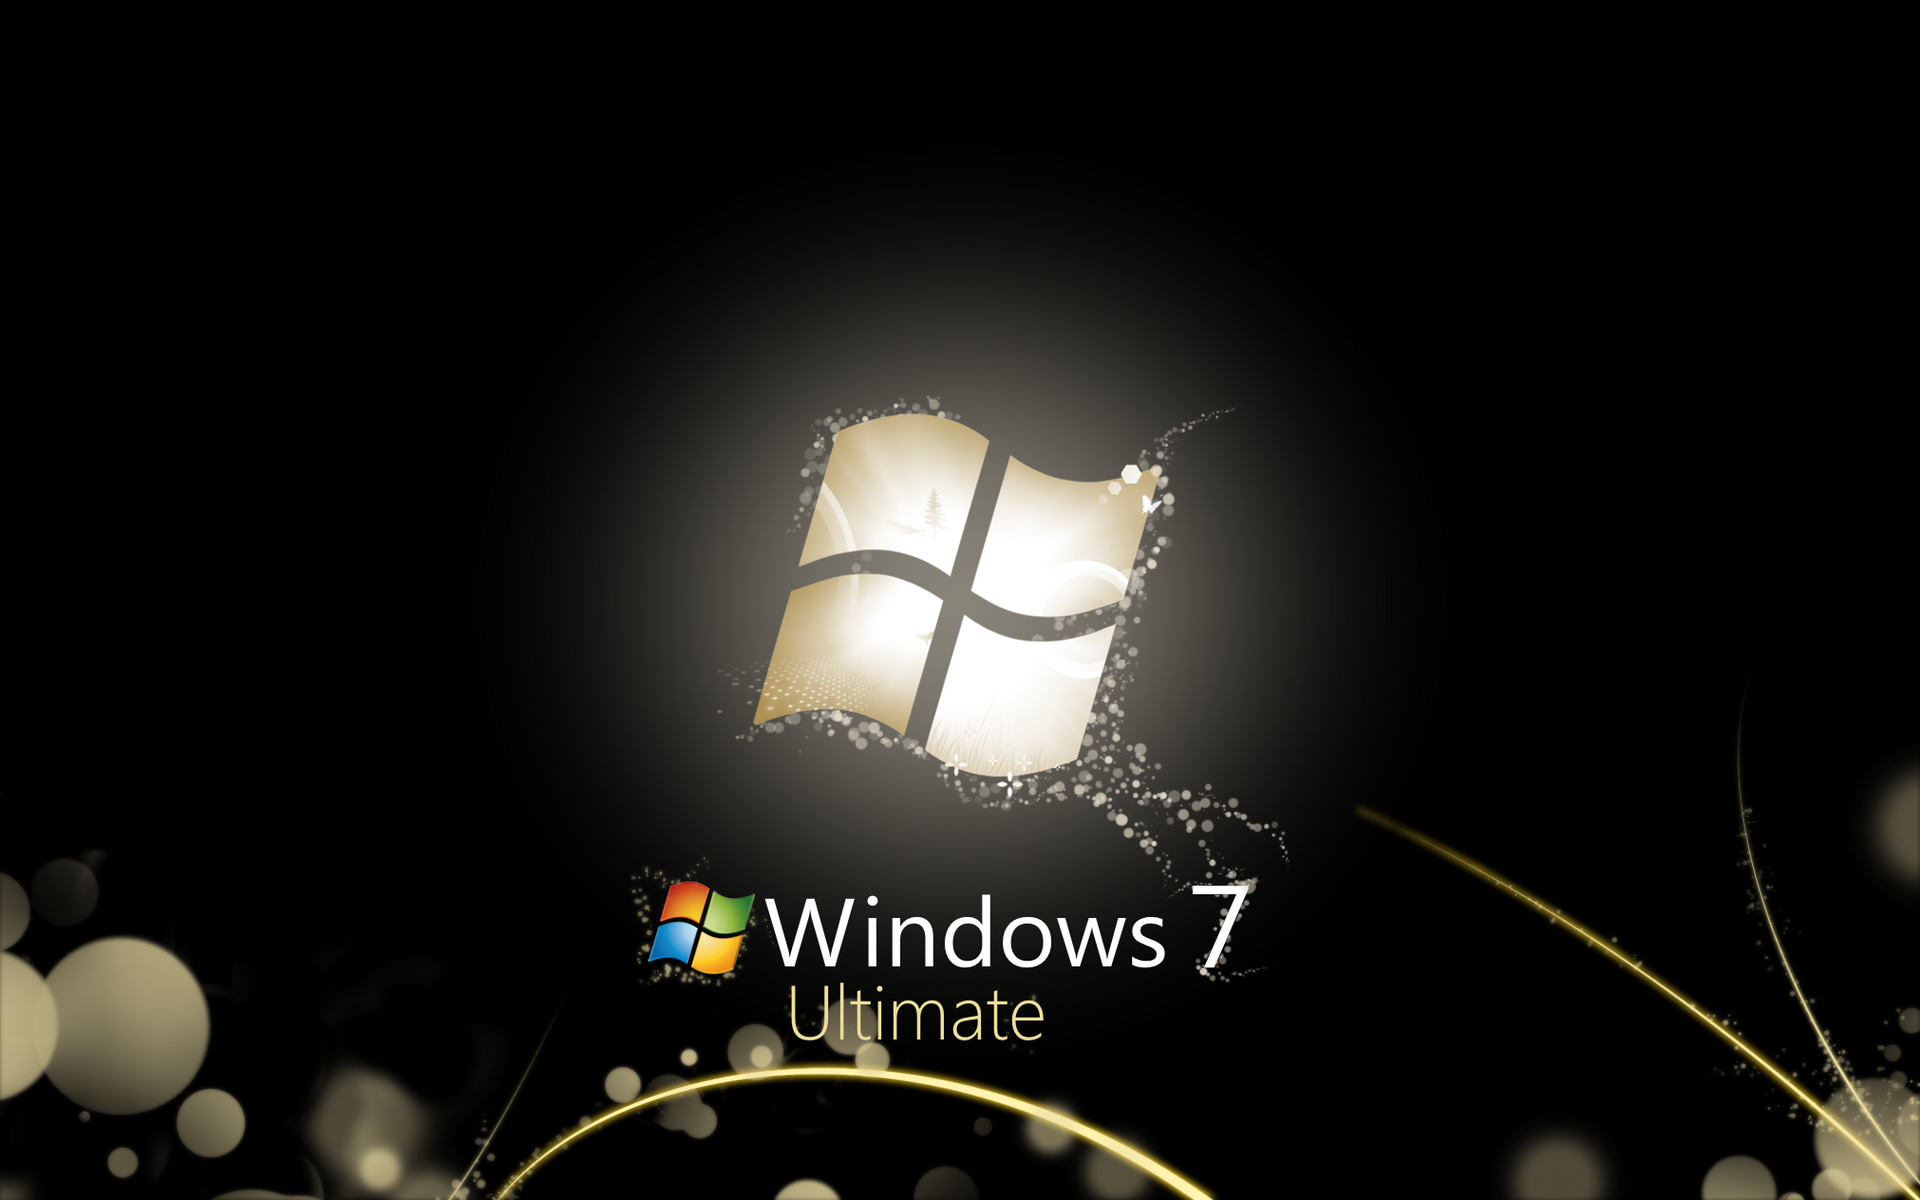 черный цвет, Windows 7, Microsoft, Microsoft Windows, логотипы, операционная кинозал - обои на рабочий стол